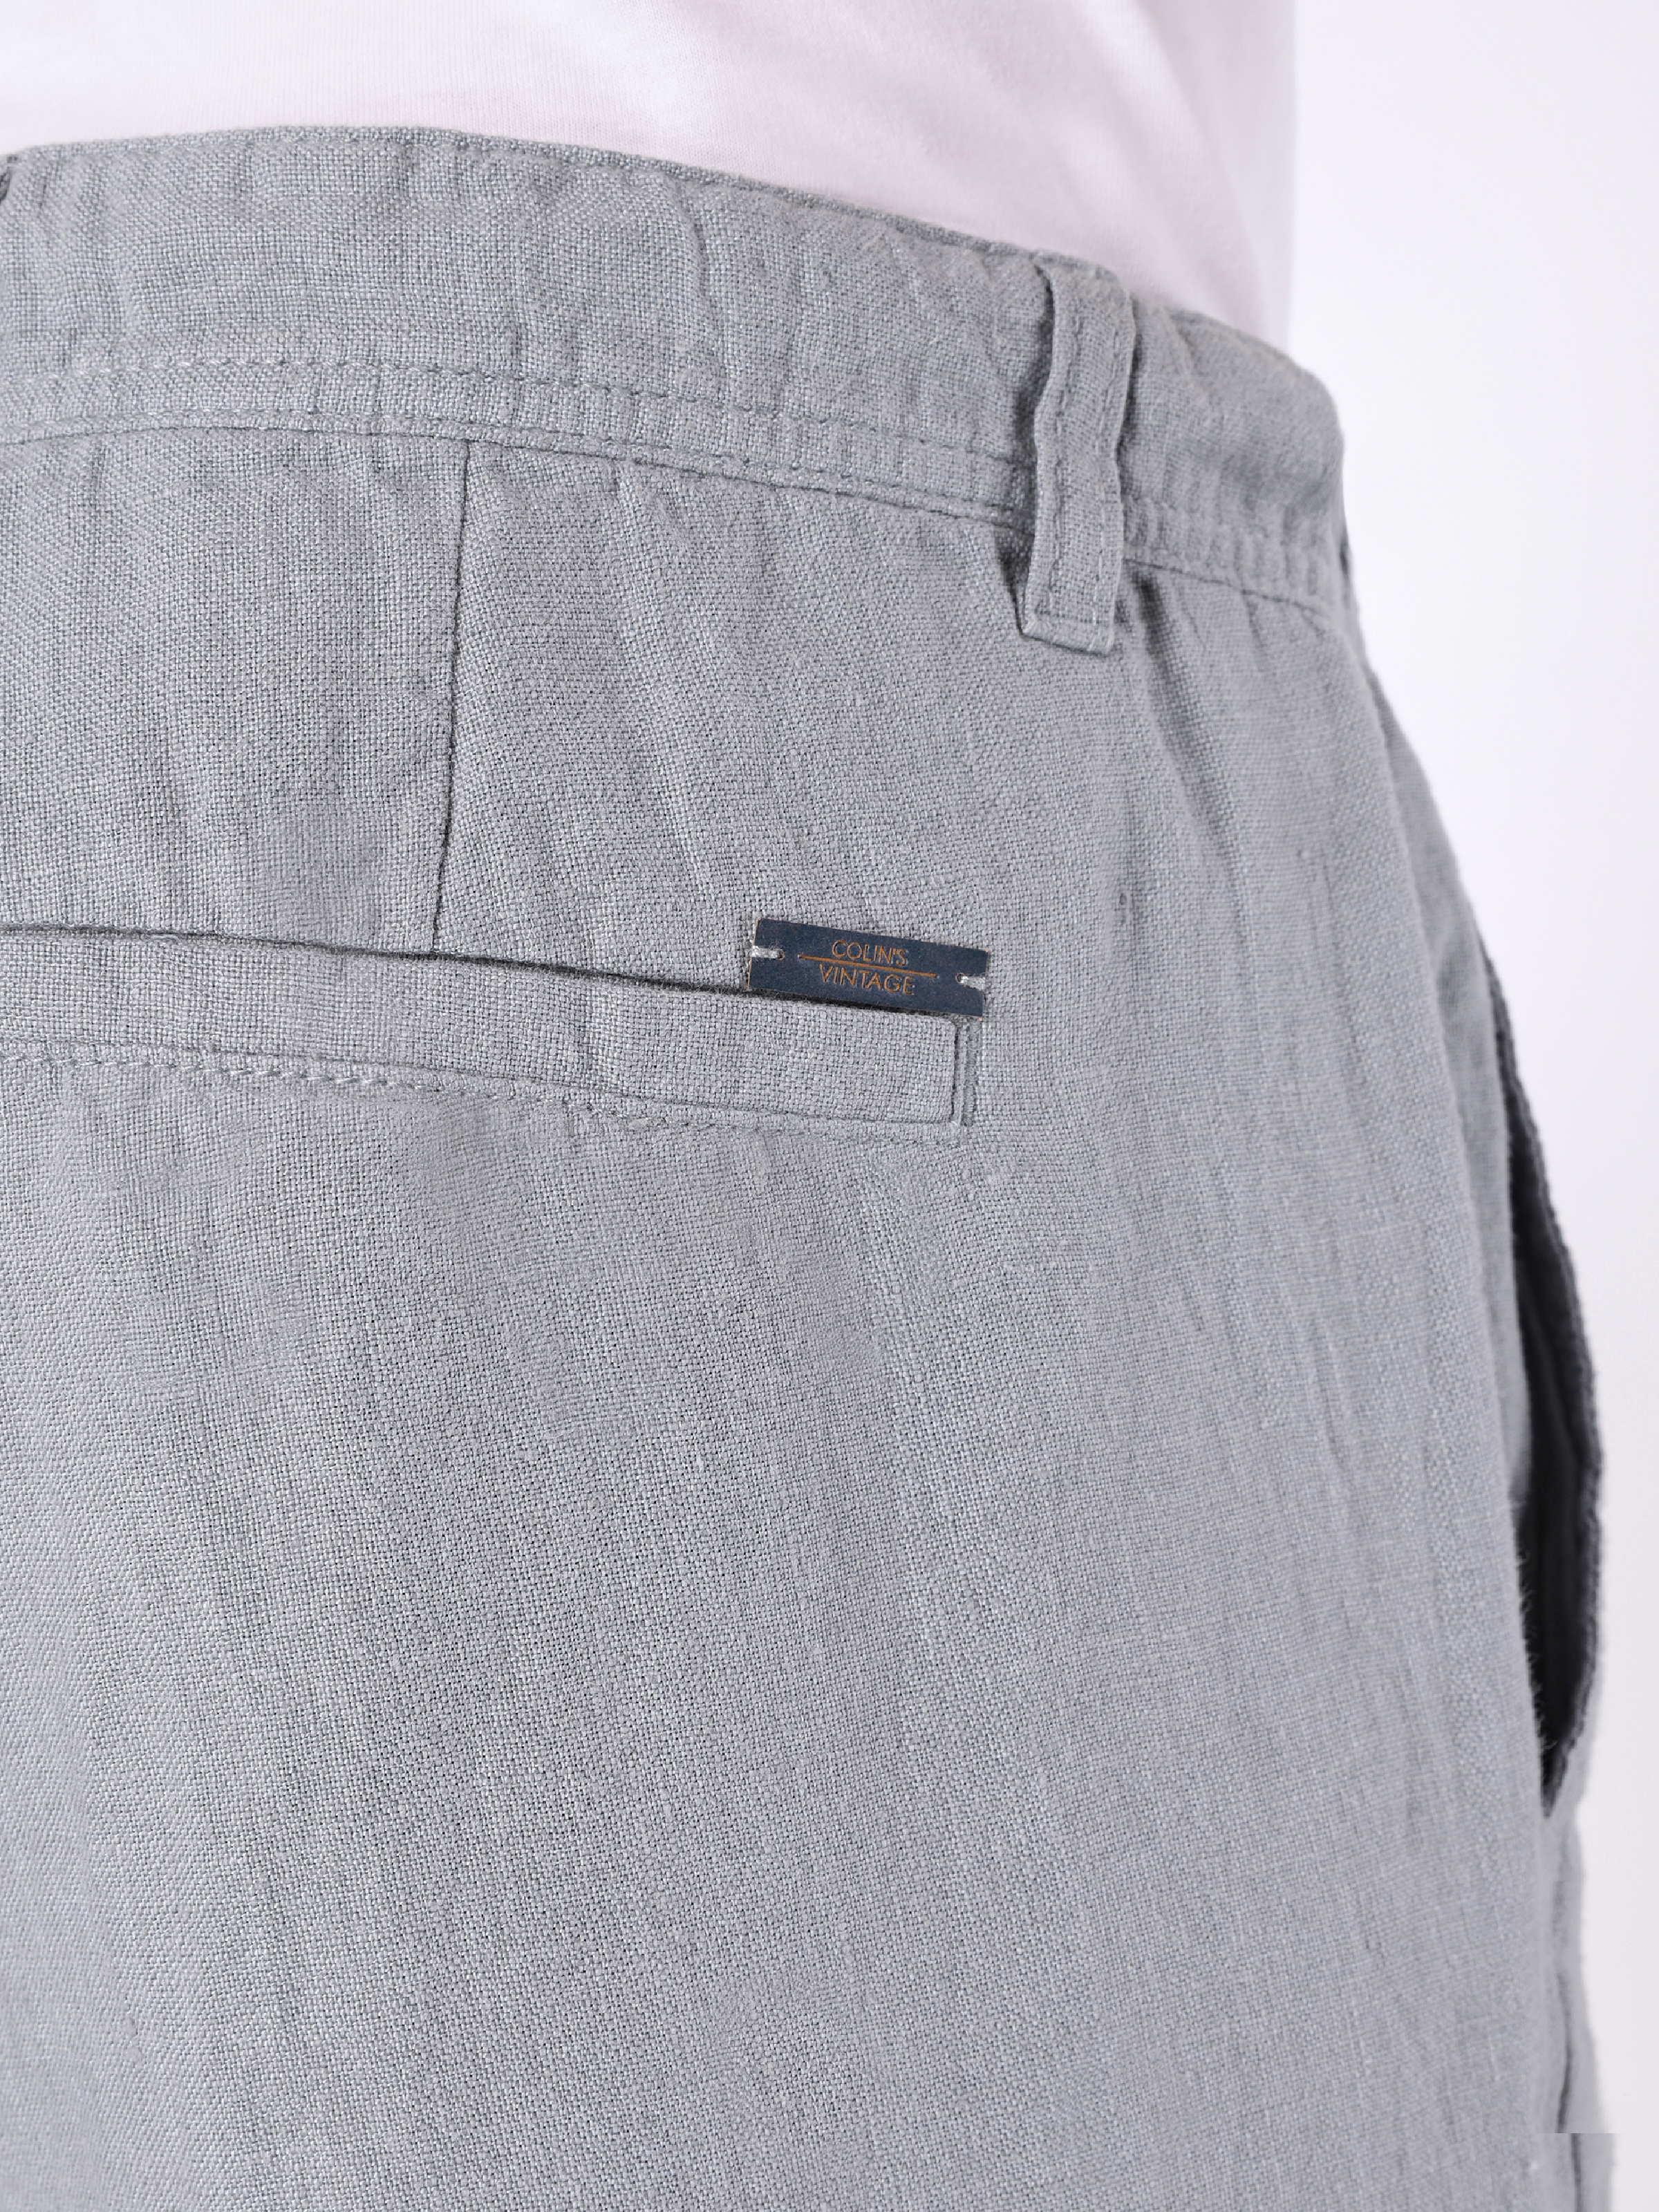 Afficher les détails de Pantalon Homme Bleu Coupe Droite Taille Moyenne Coupe Regular